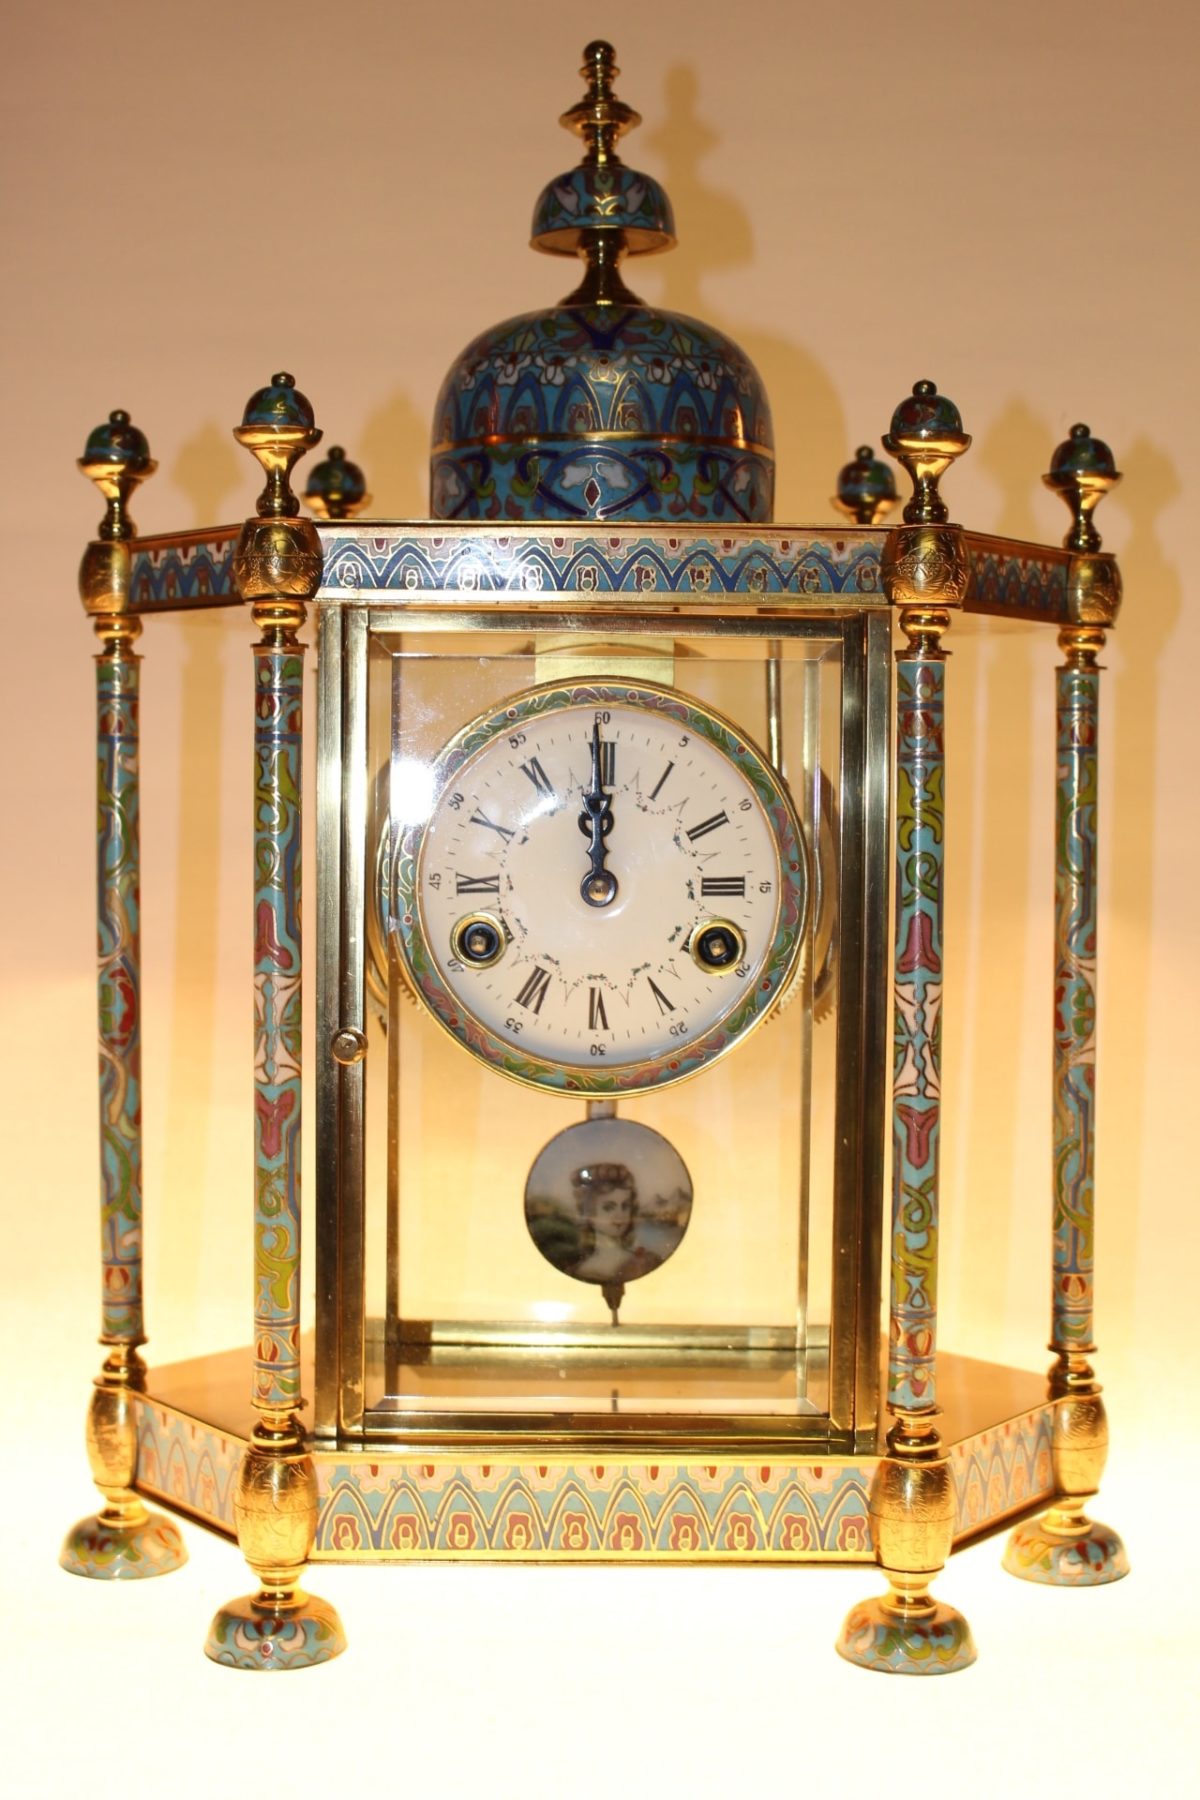 Cloisonné Uhr, 46 x 35 x 18cm